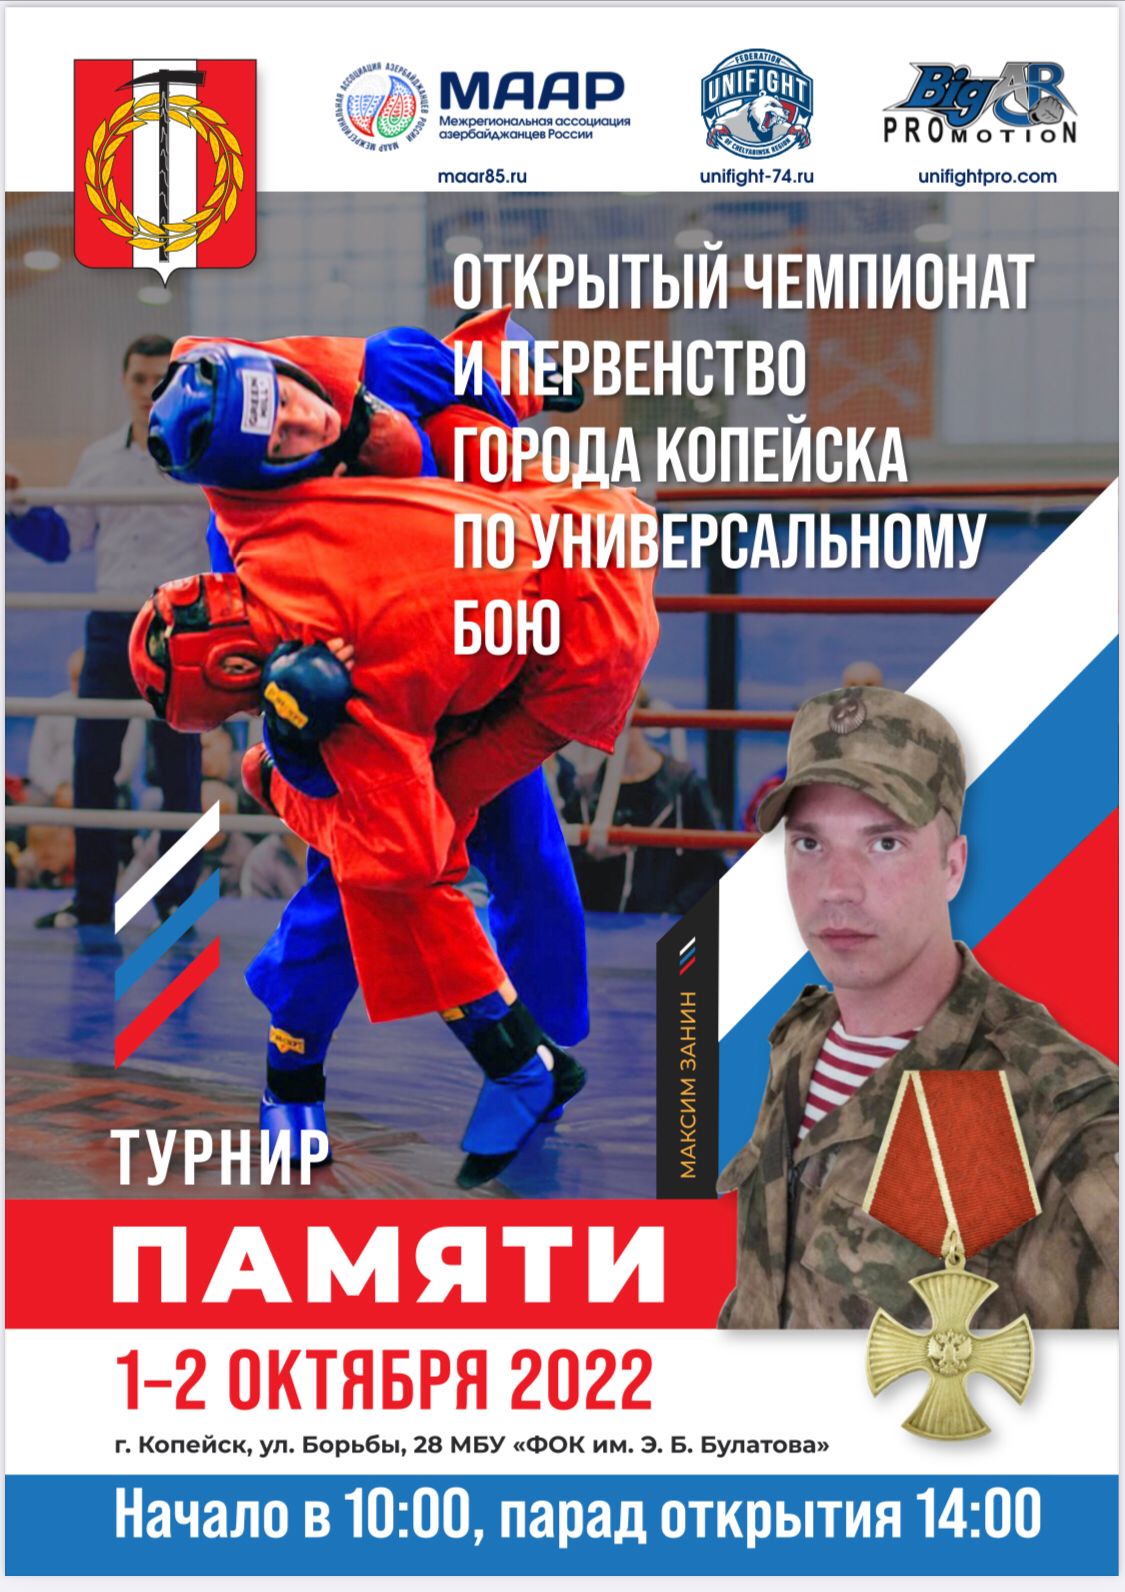 В г. Копейске Челябинской области пройдет Чемпионат и Первенство по универсальному бою памяти Максима Занина